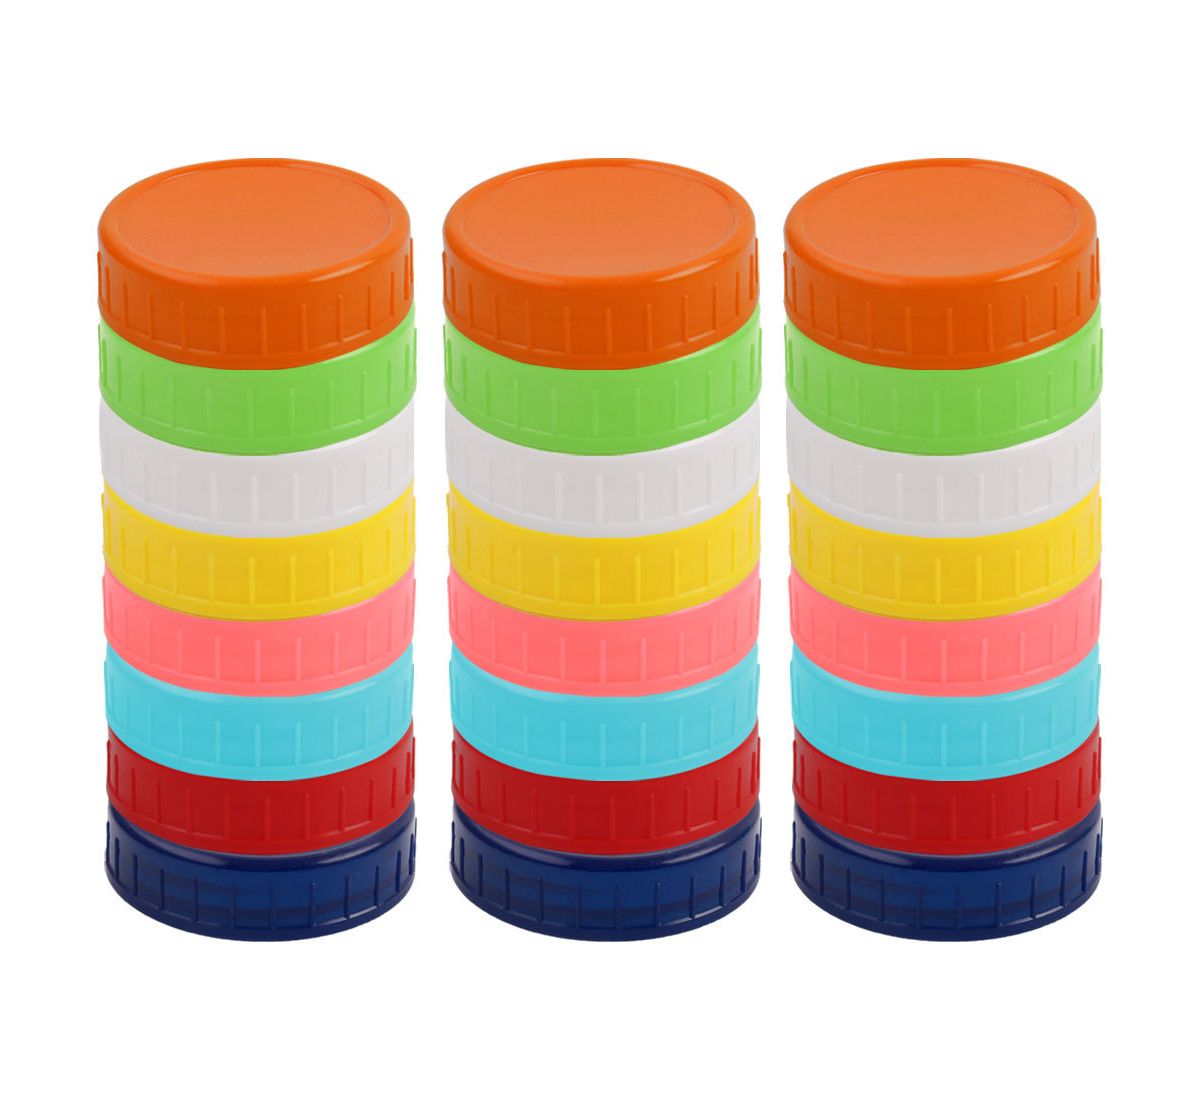 24 шт. разноцветные пластиковые крышки для каменных банок с обычным горлышком, консервные банки для каменщиков Unique Bargains